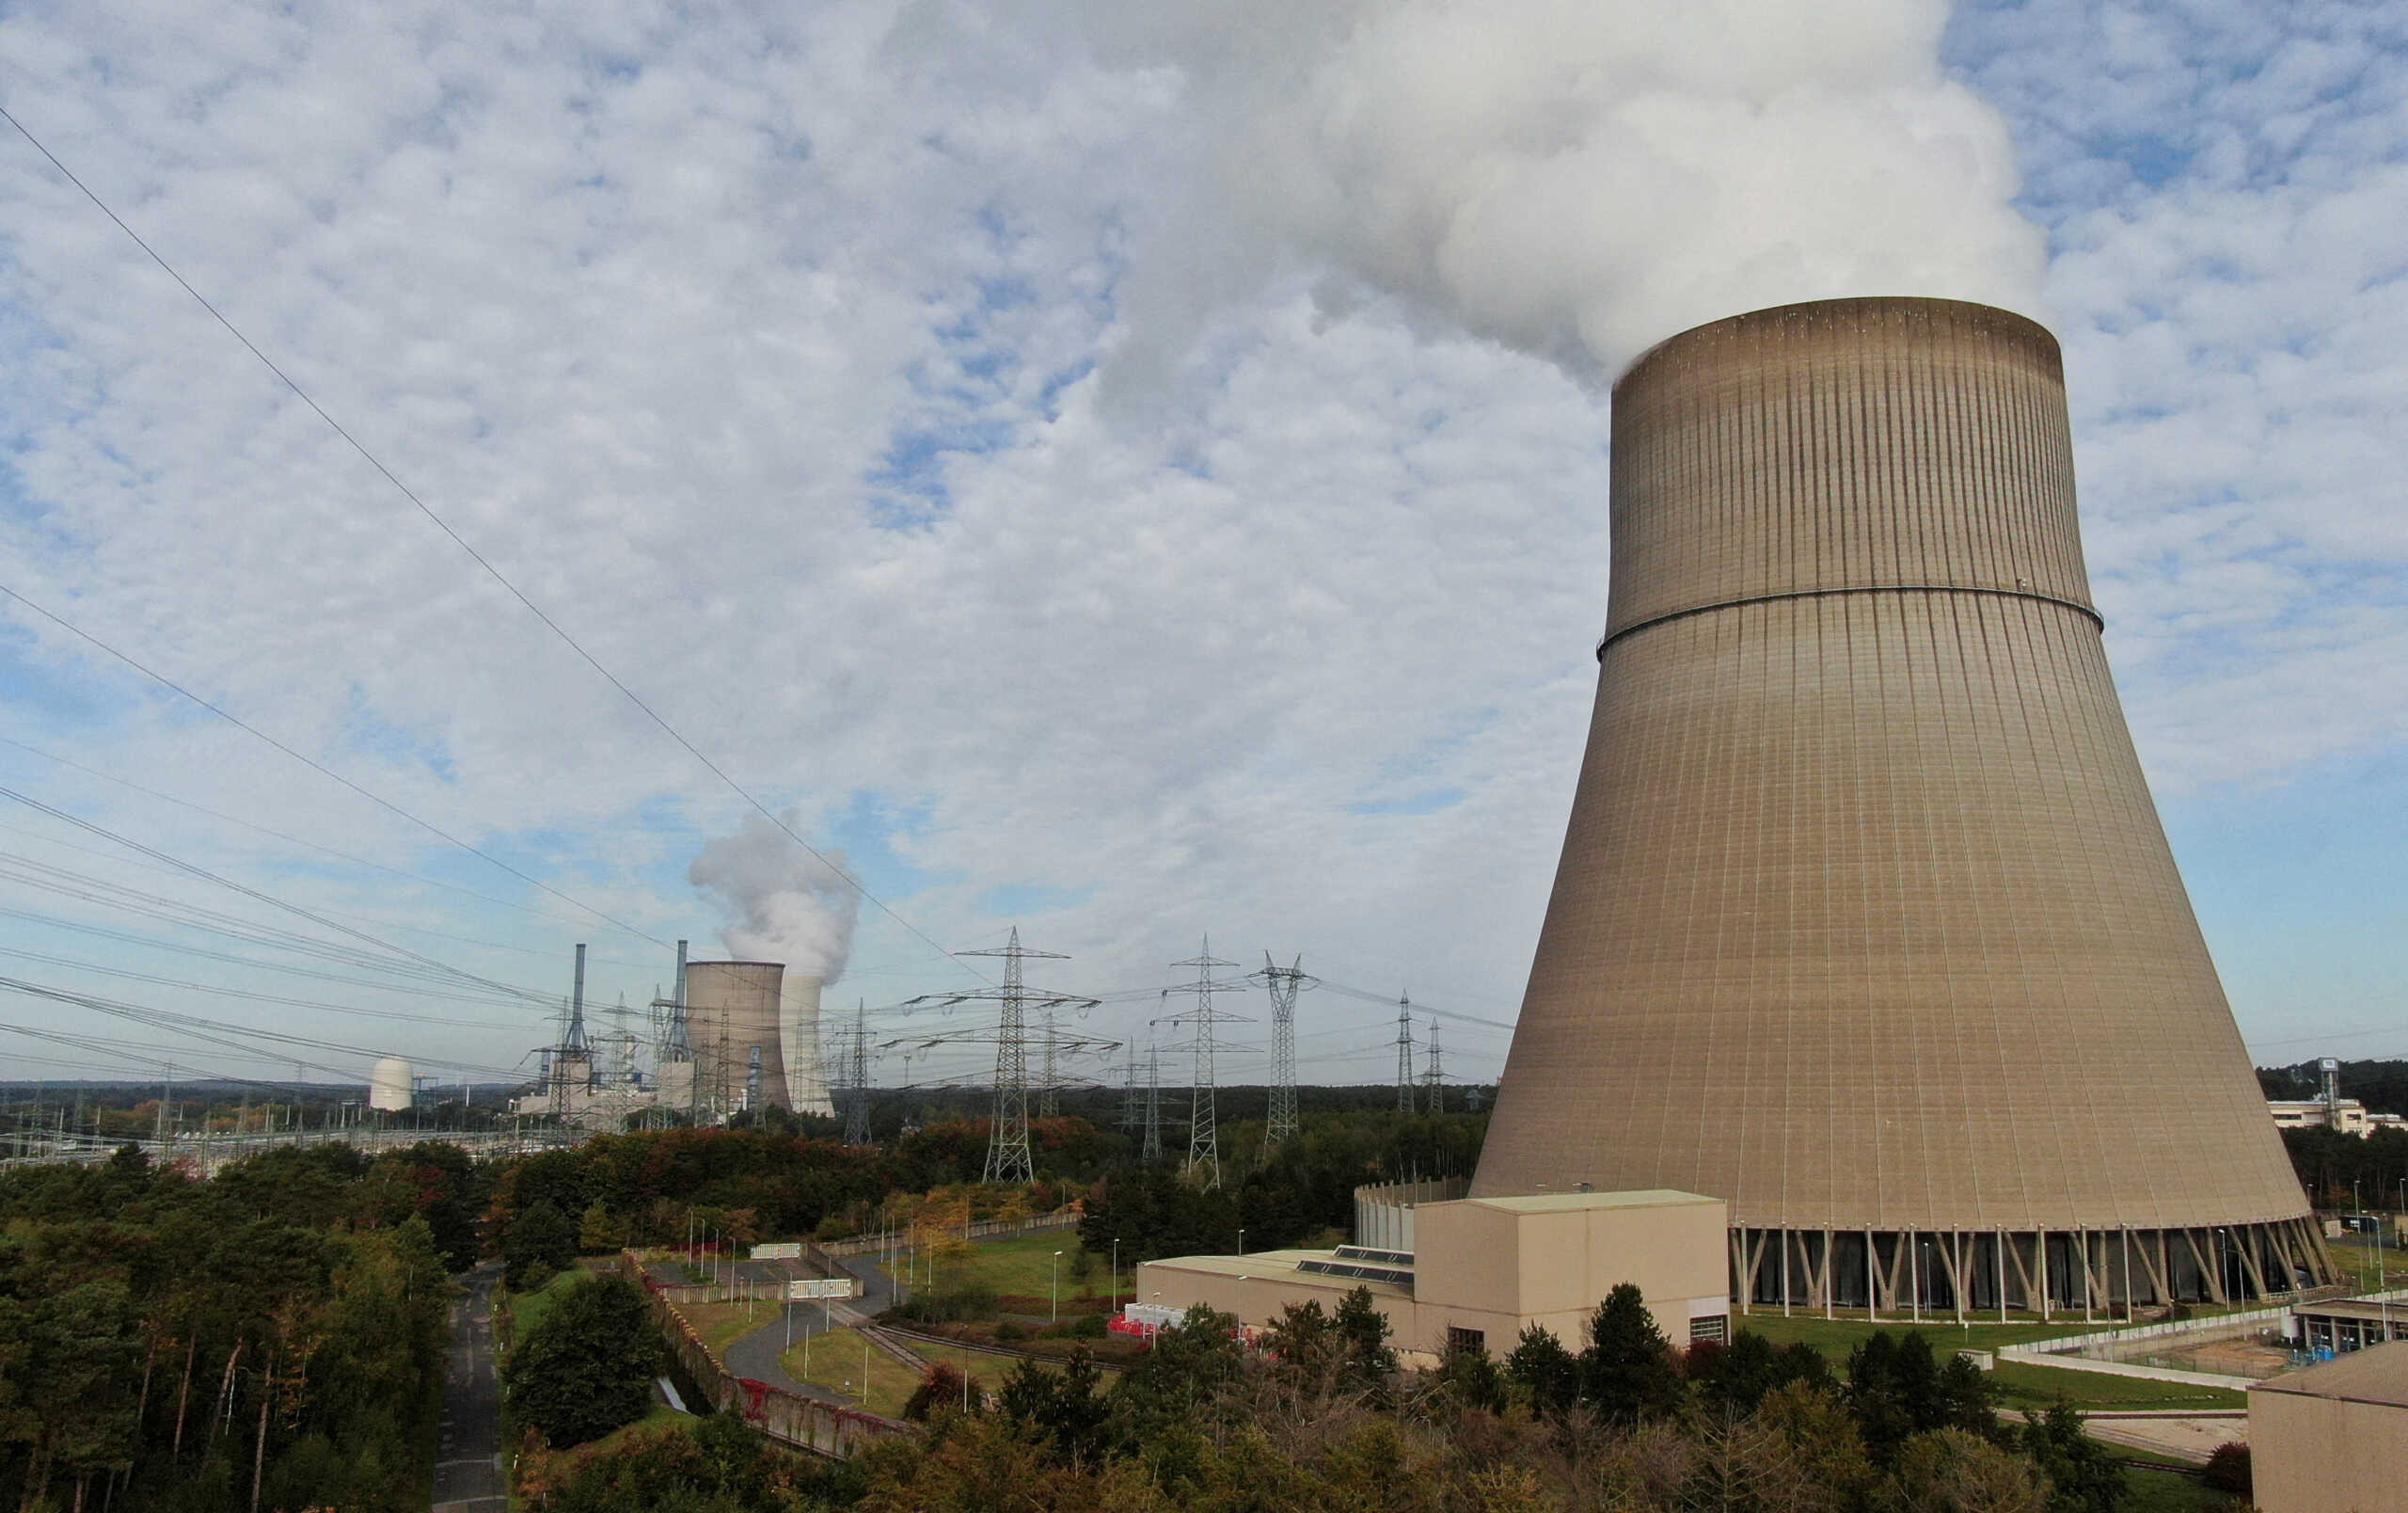 Γερμανία: Οι τρεις πυρηνικοί σταθμοί θα παραμείνουν σε λειτουργία μέχρι τον Απρίλιο με εντολή Σολτς